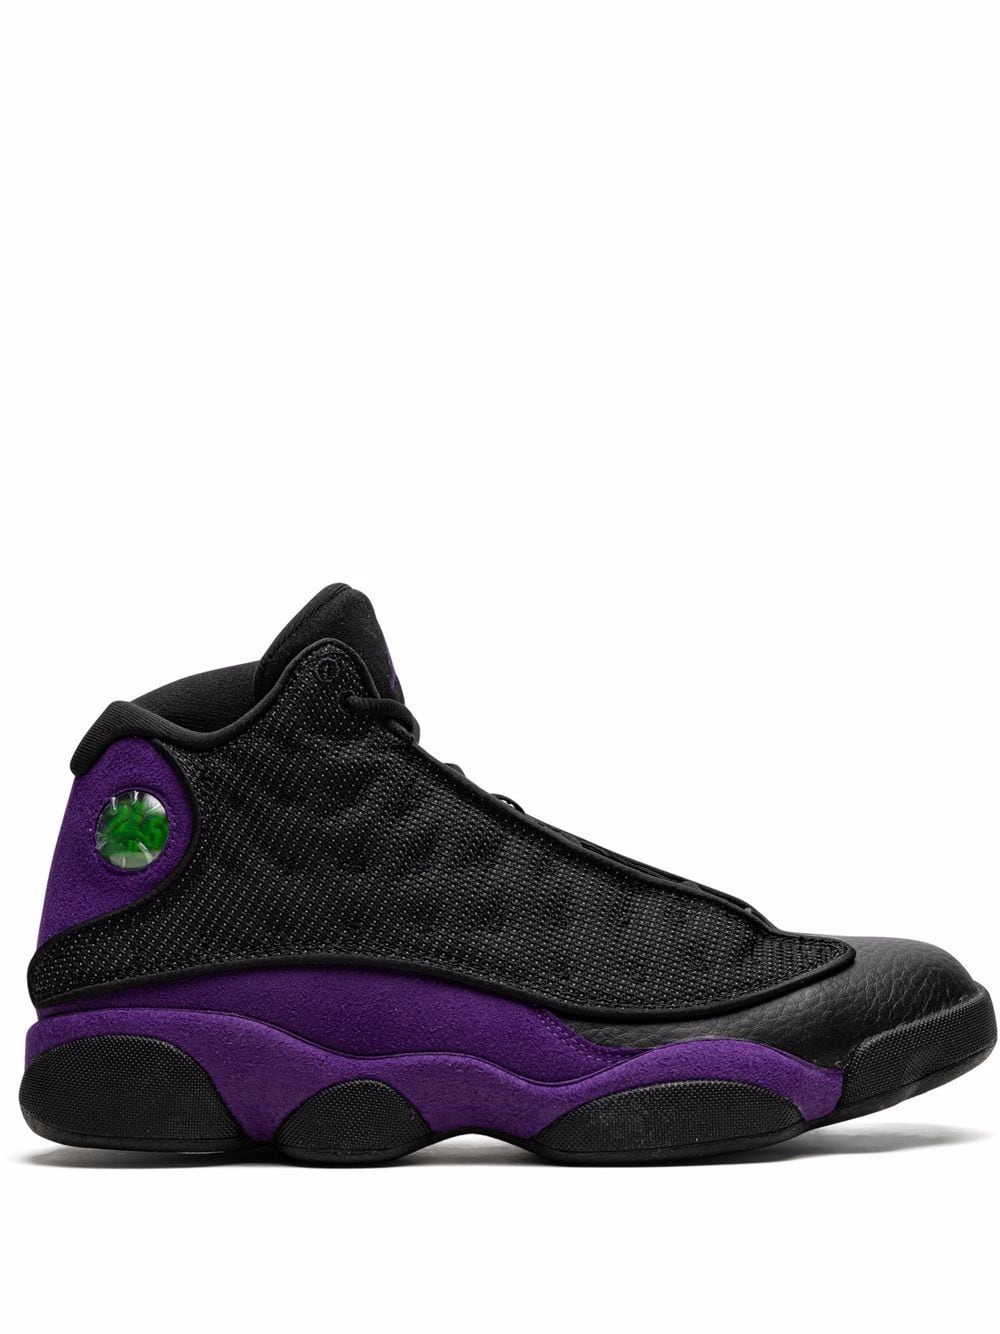 Jordan Air Jordan 13 Retro "Court Purple" sneakers - Black von Jordan